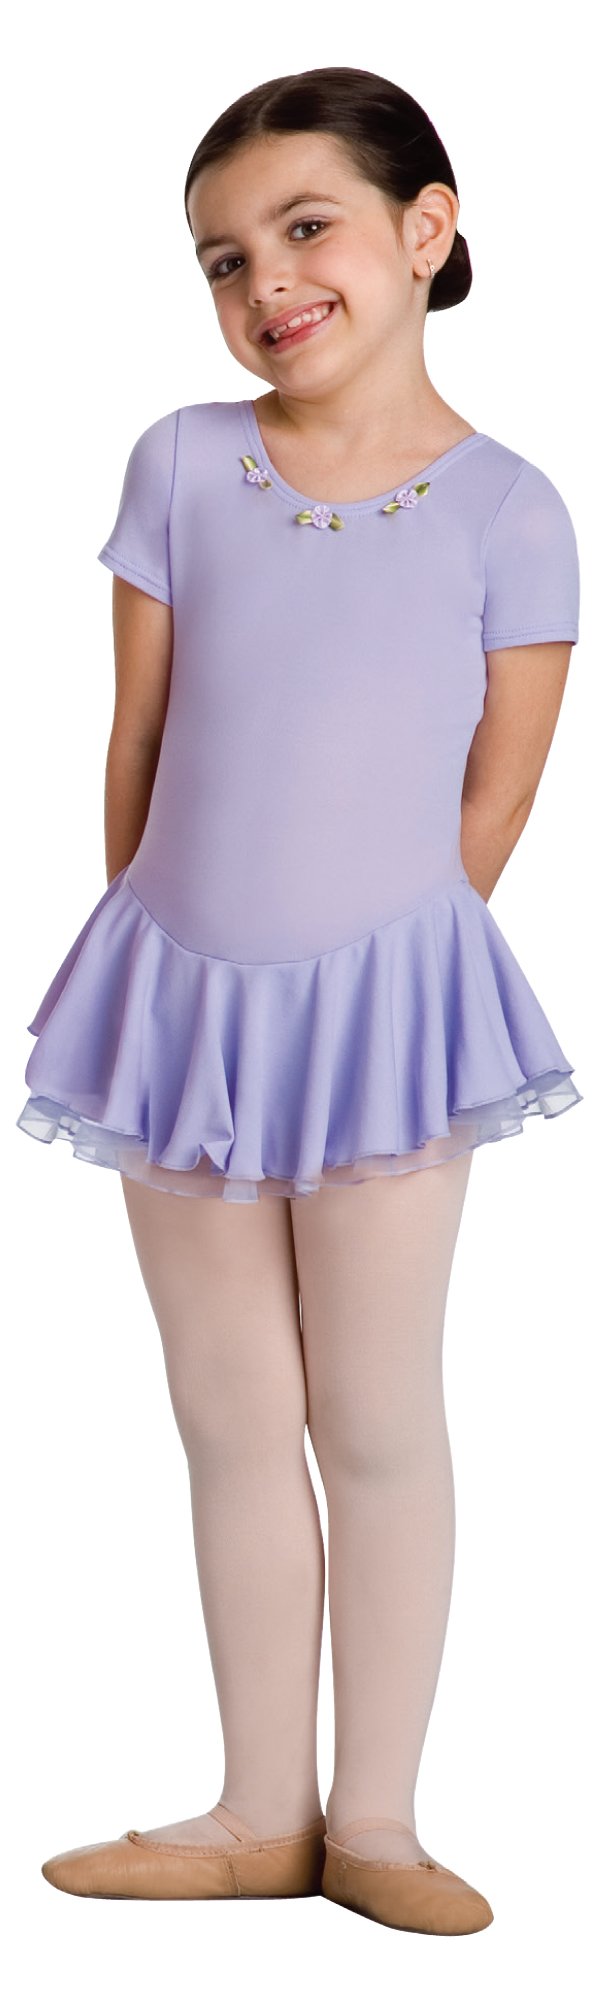 [AUSTRALIA] - Body Wrappers 159 Girls Short Sleeve Skirted Leotard 08/10/2015 Light Pink 